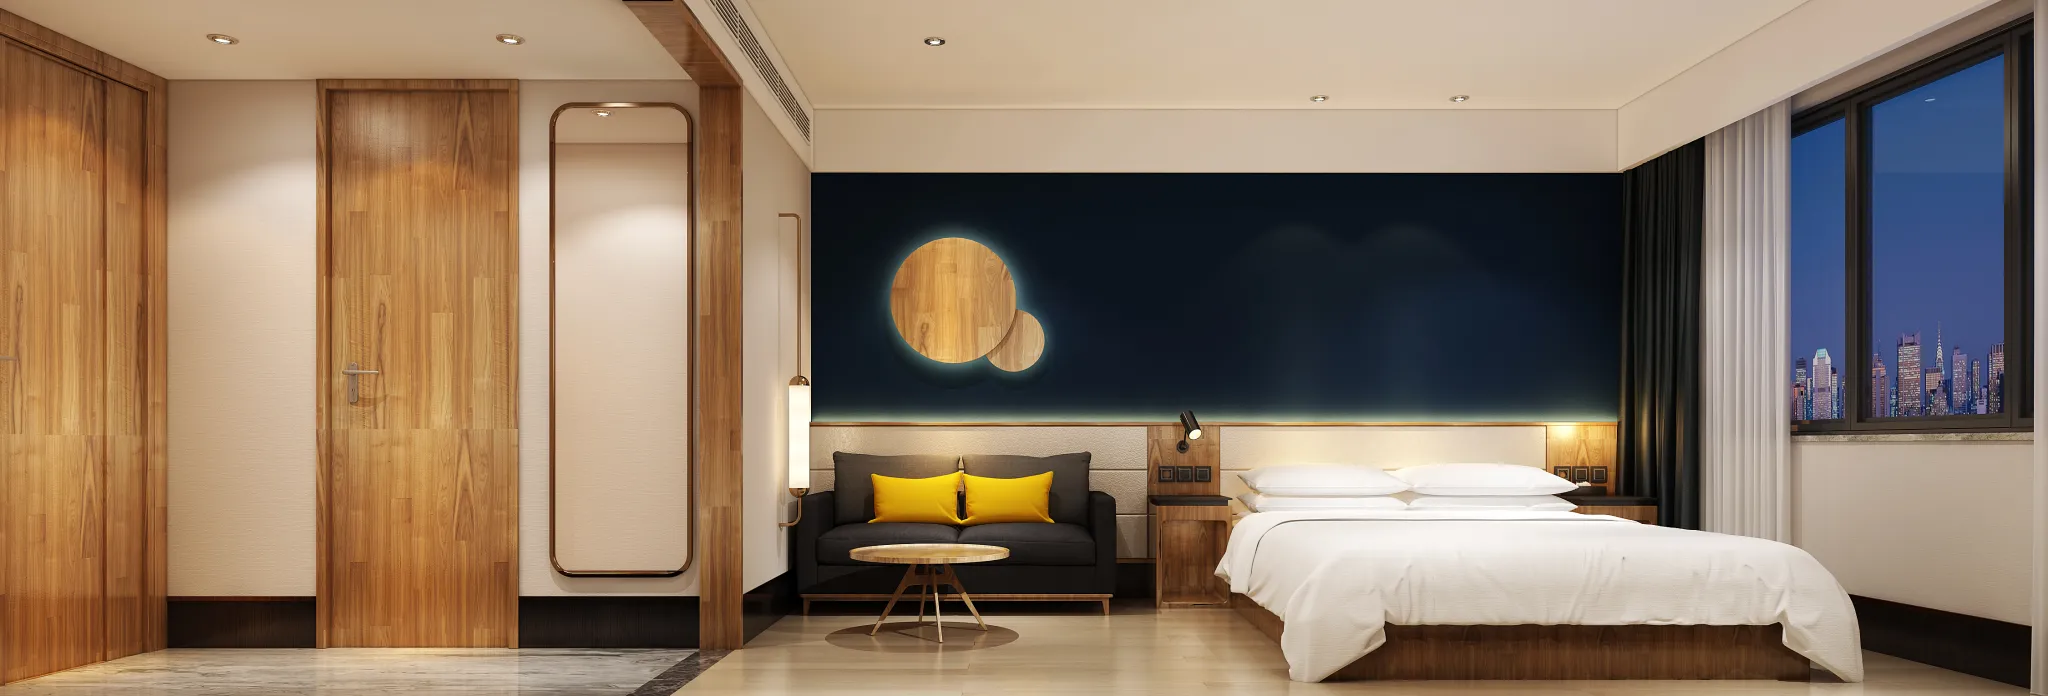 Cooldesign Interior 20 – Public Space – HOTEL – 13